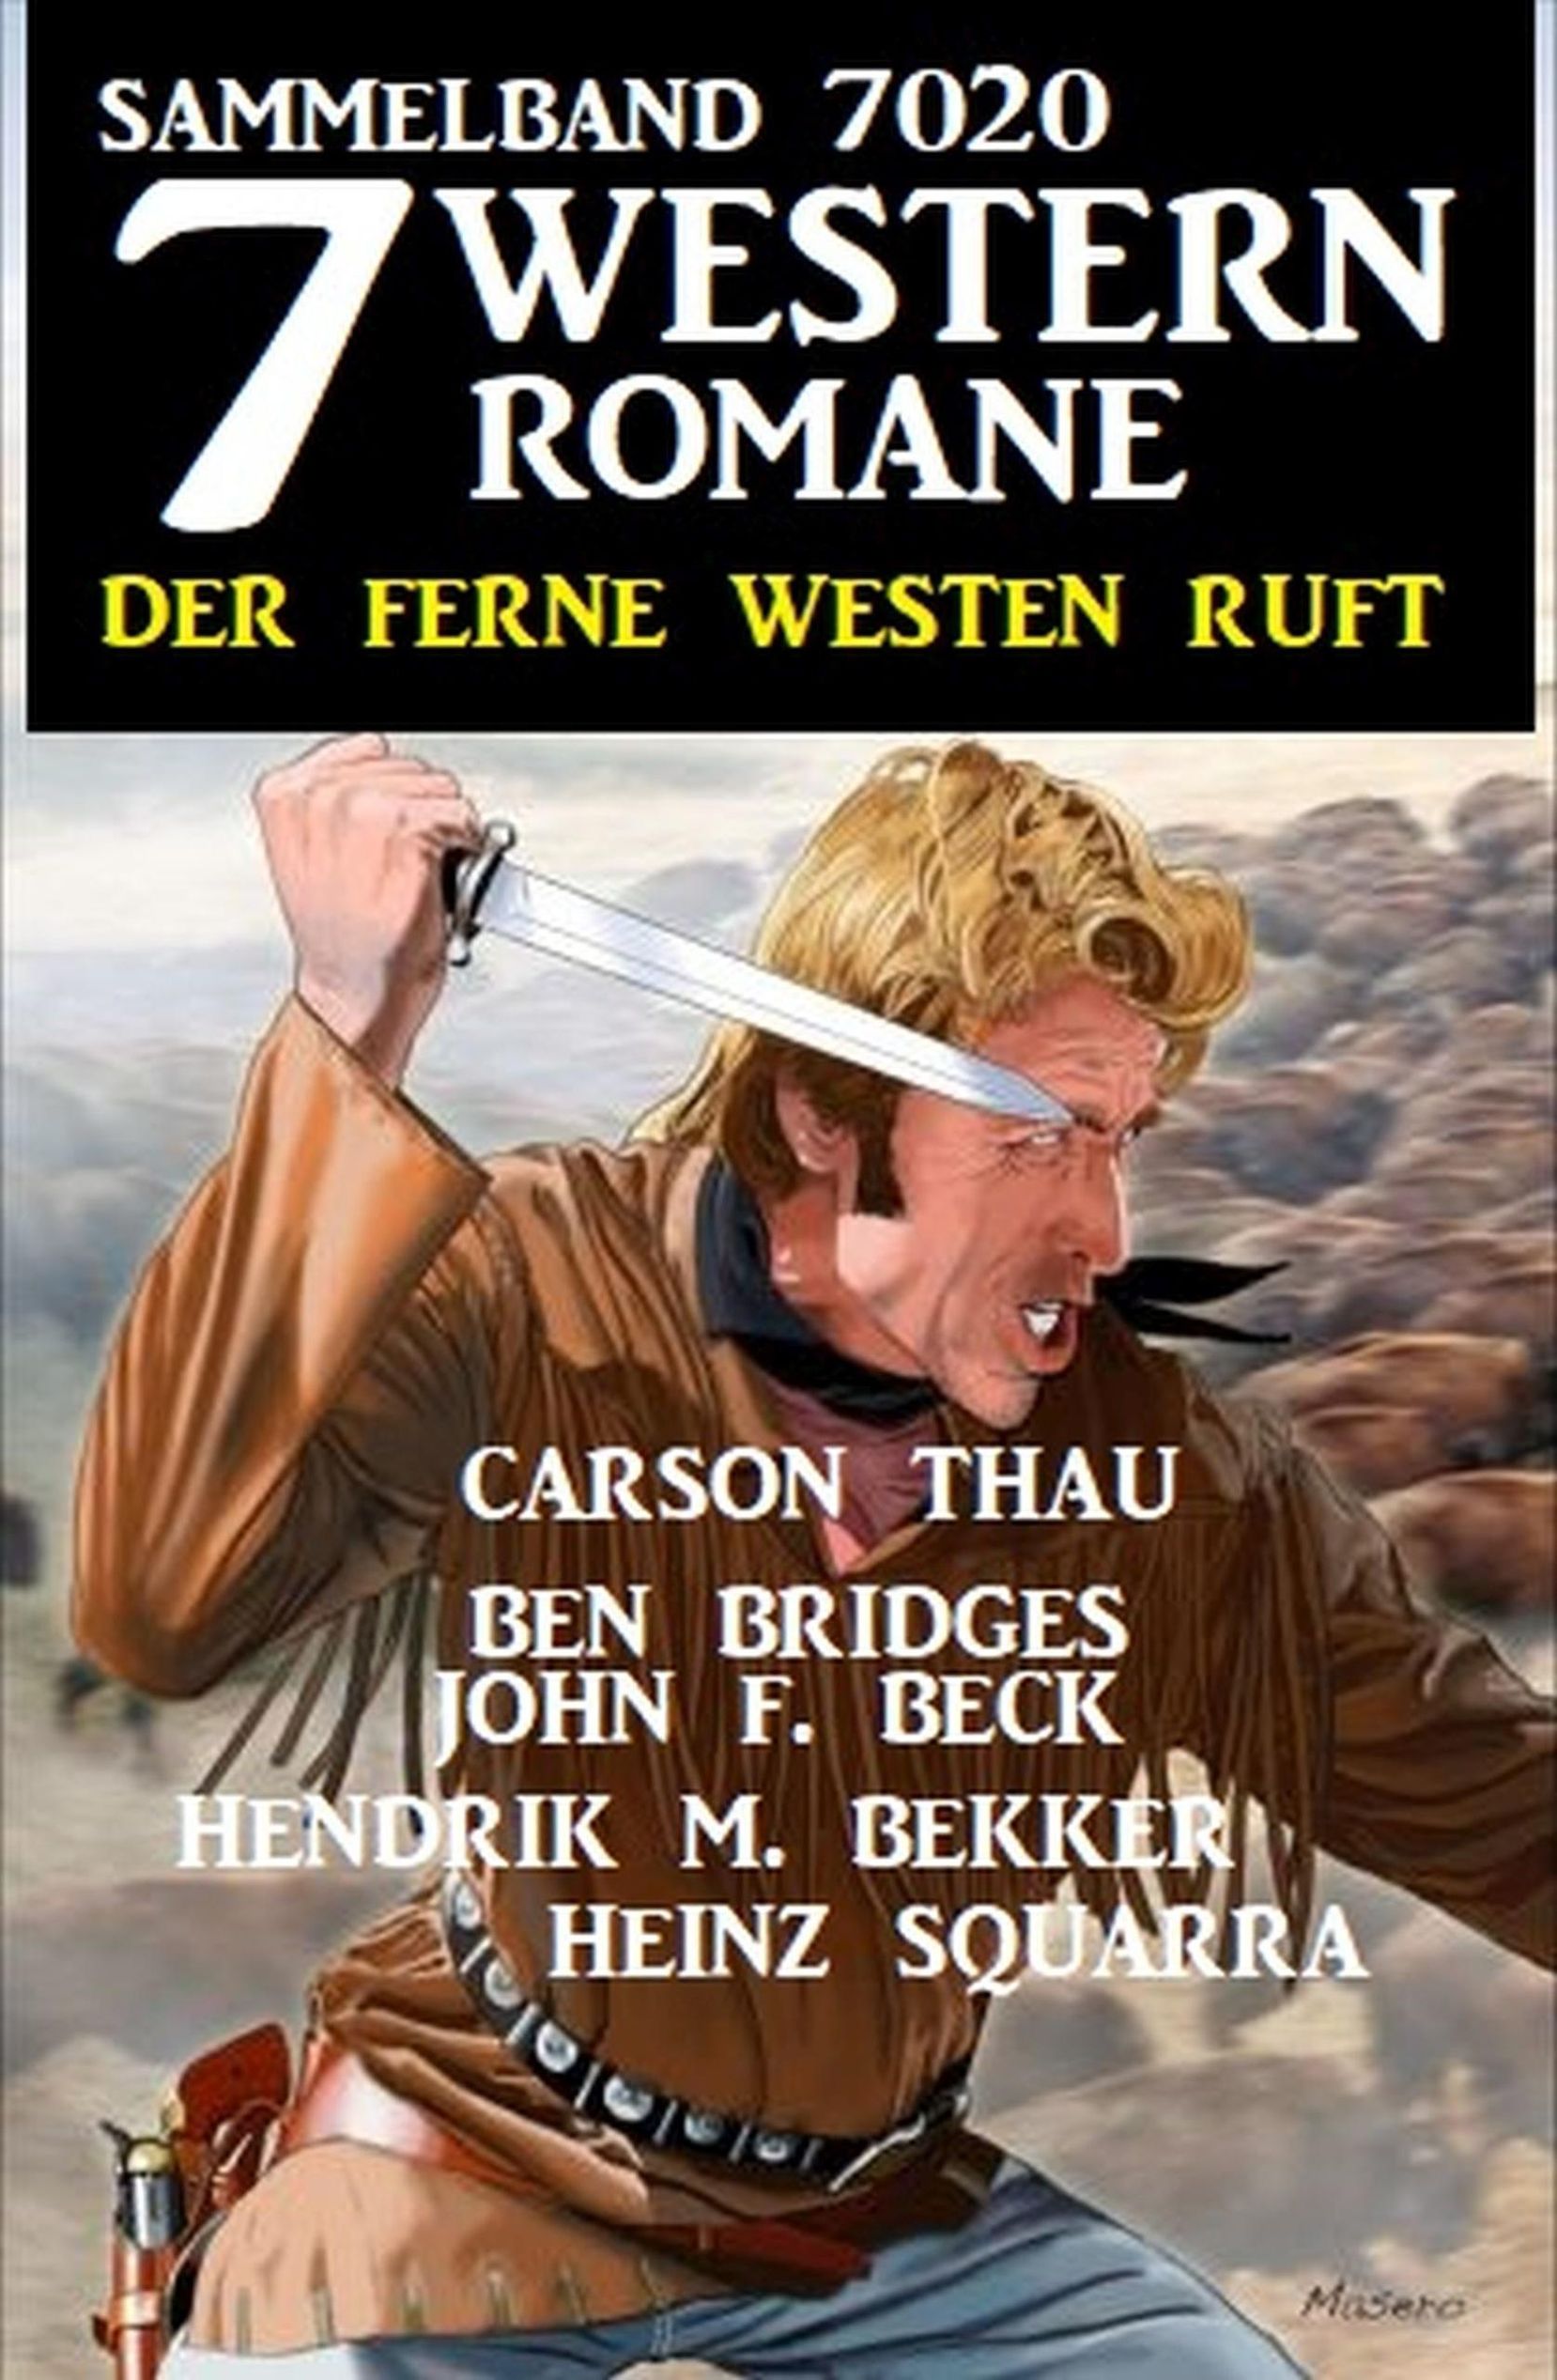 7 Western Romane - Der ferne Westen ruft: Sammelband 7020 eBook v. John F.  Beck u. weitere | Weltbild